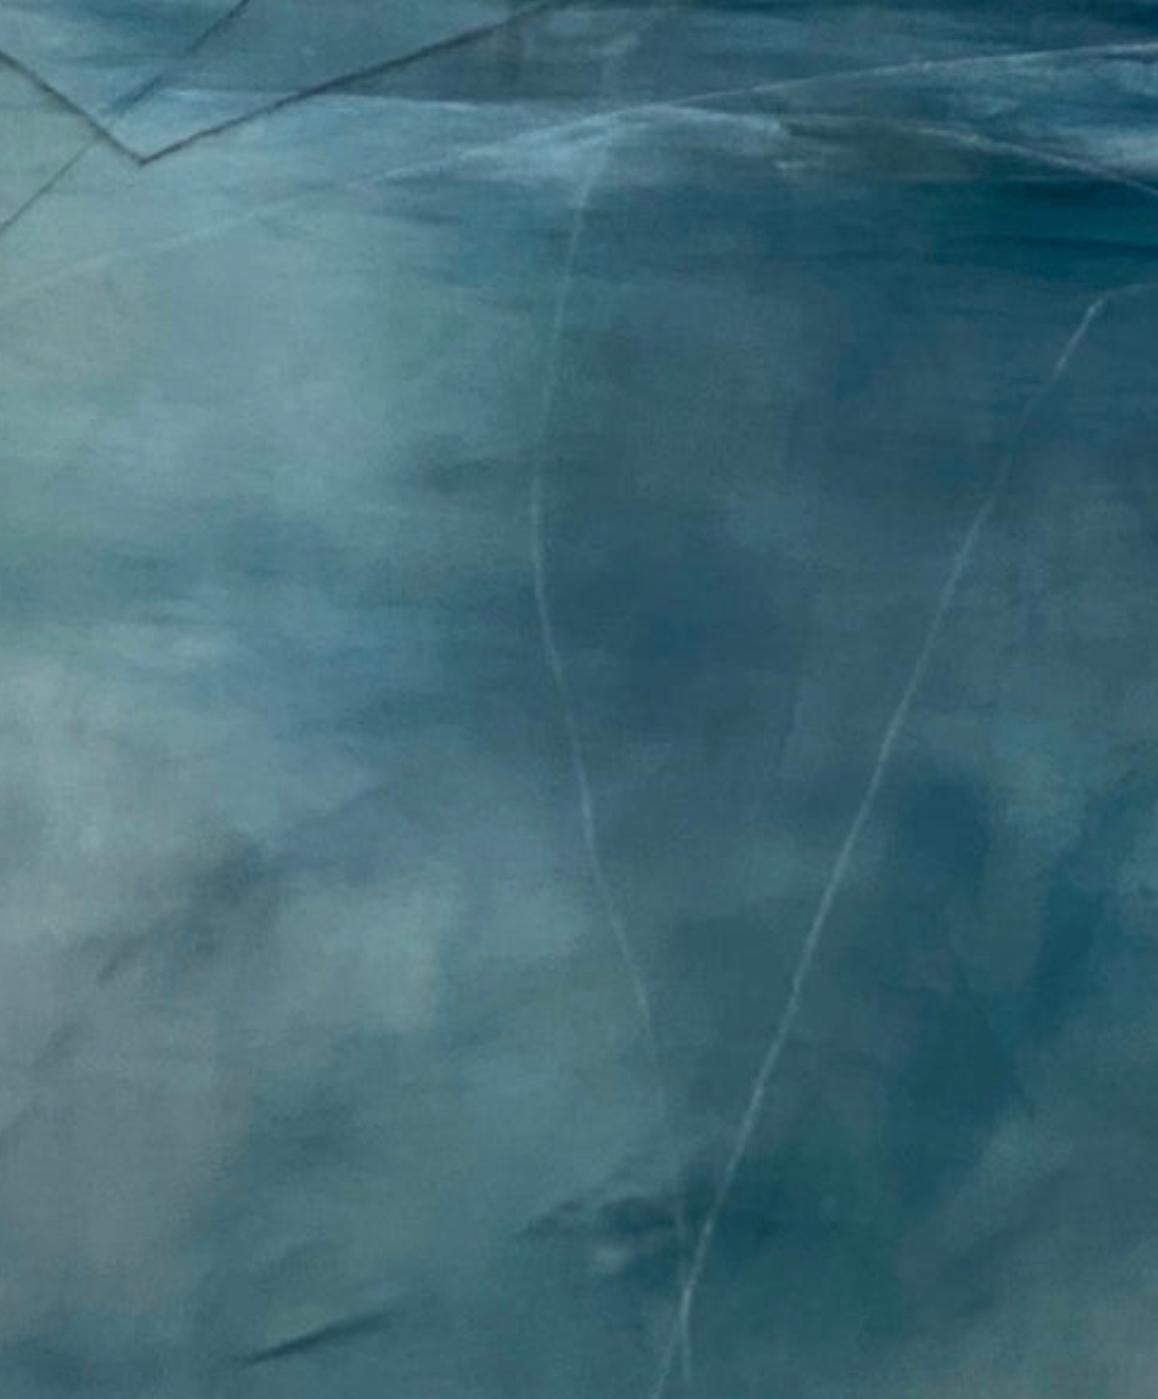 Zeitgenössische abstrakte Malerei aus der Perspektive einer Flusslandschaft.  Das blaue Wasser wäre auch in einem Haus in Florida schön.  Dieses Gemälde ruft ein kontemplatives Gefühl von Frieden und Ruhe hervor.